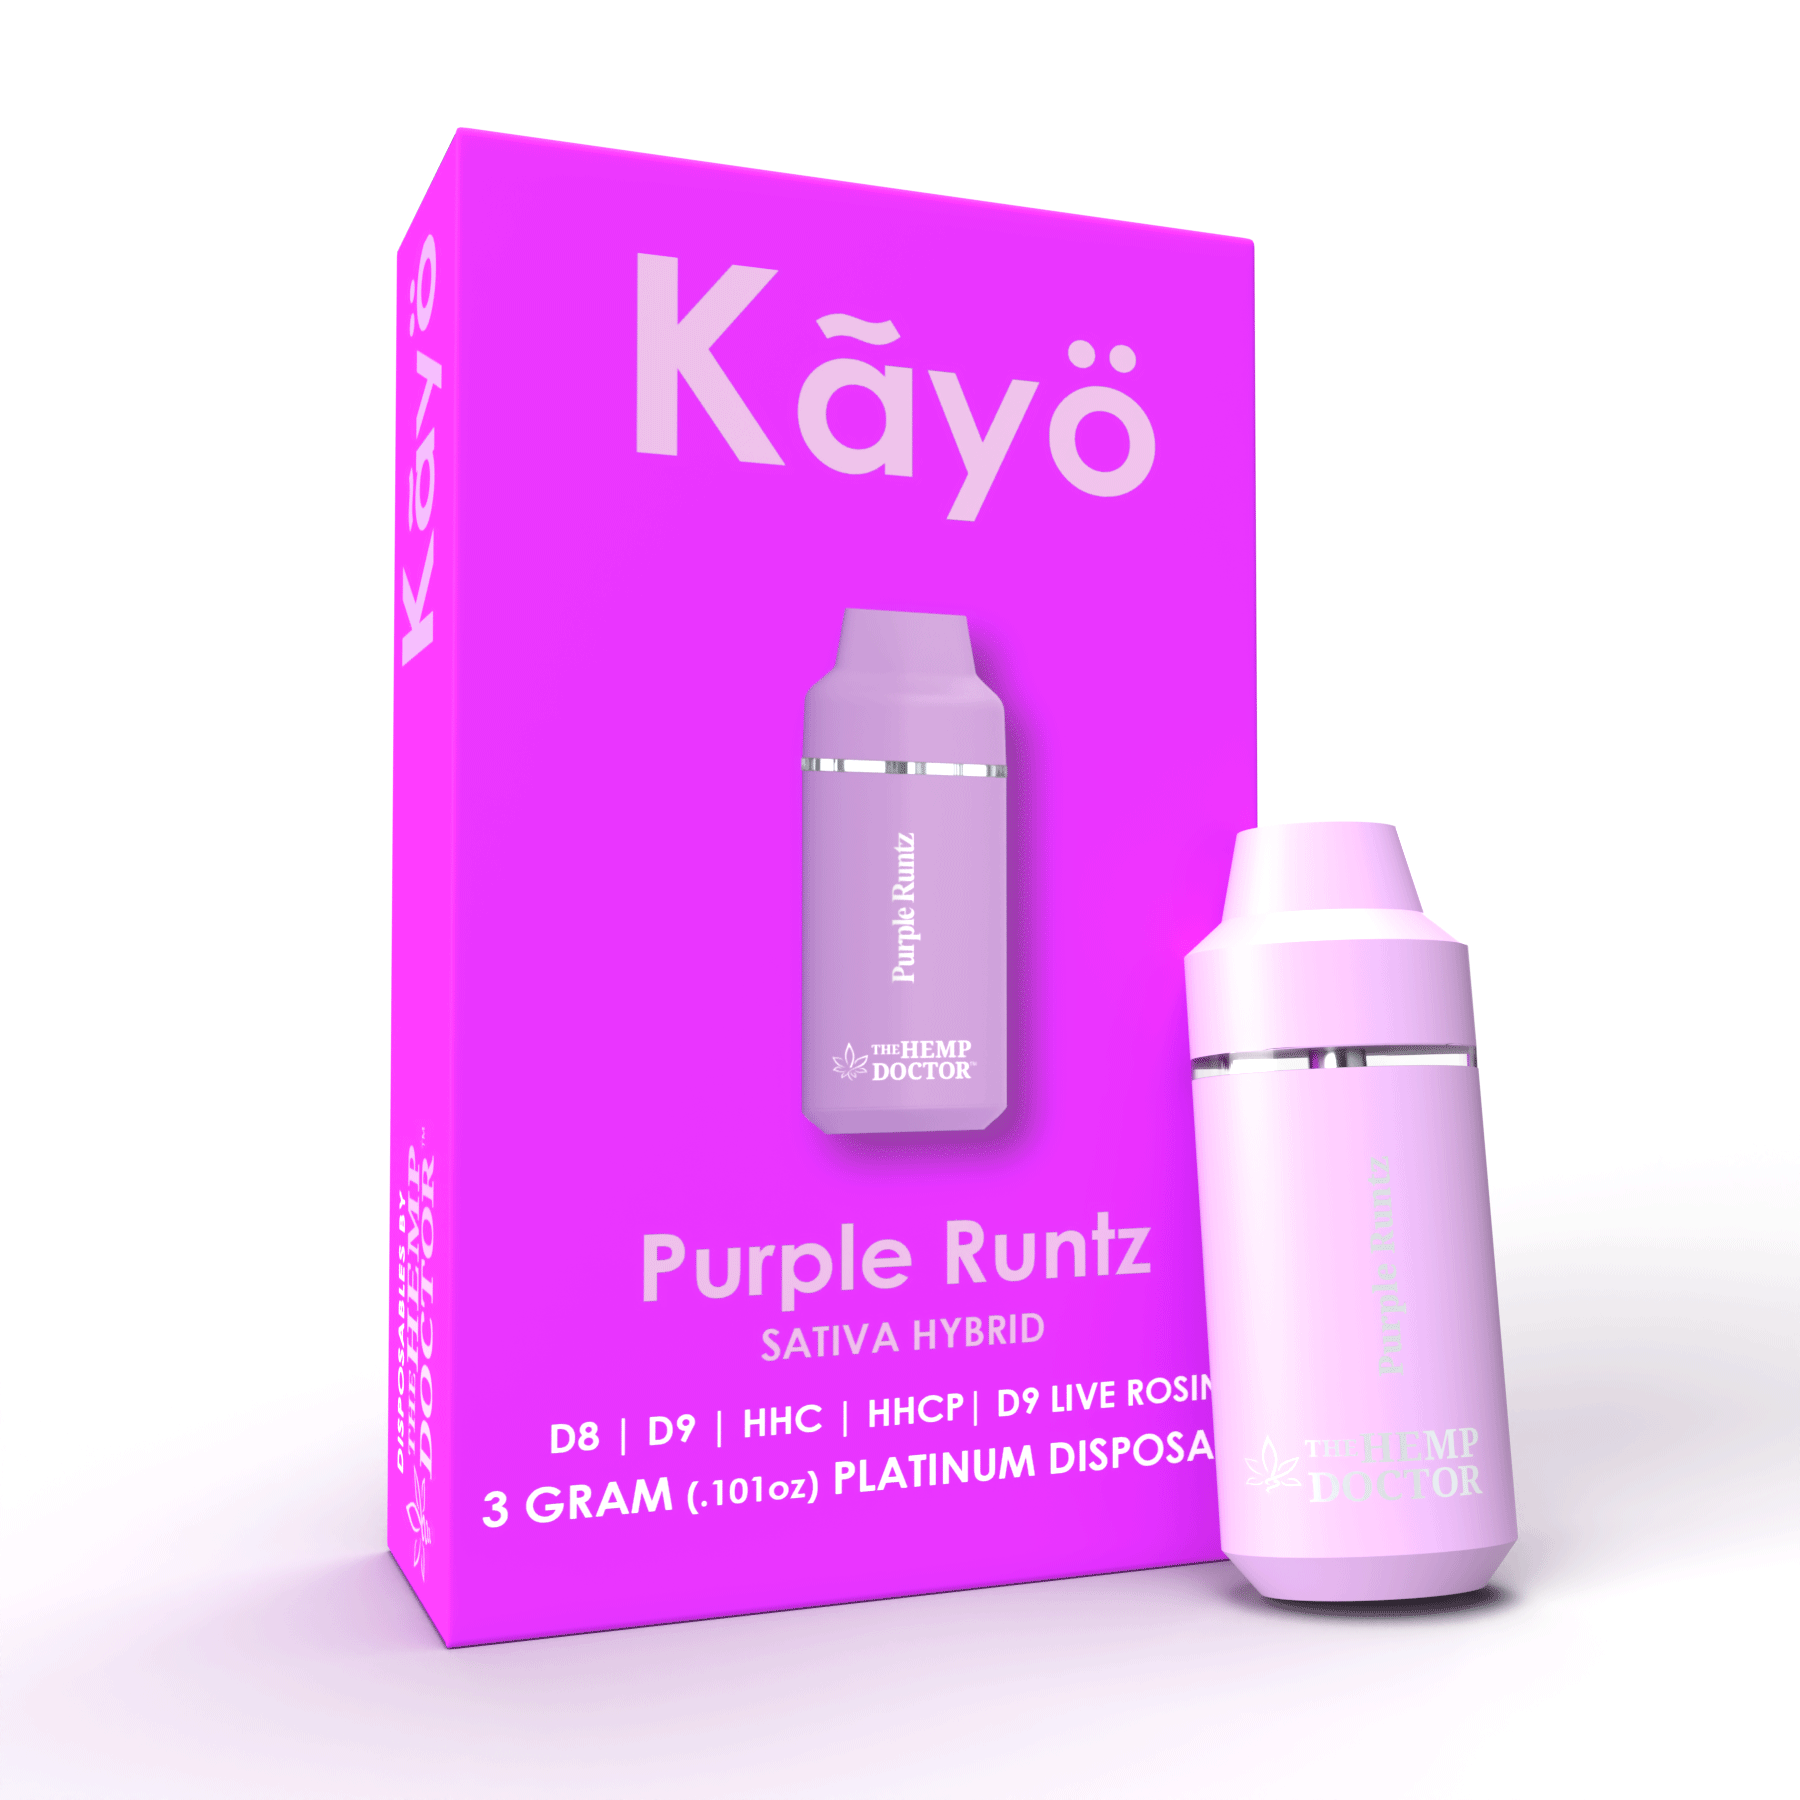 Kayo 3g Purple Runtz